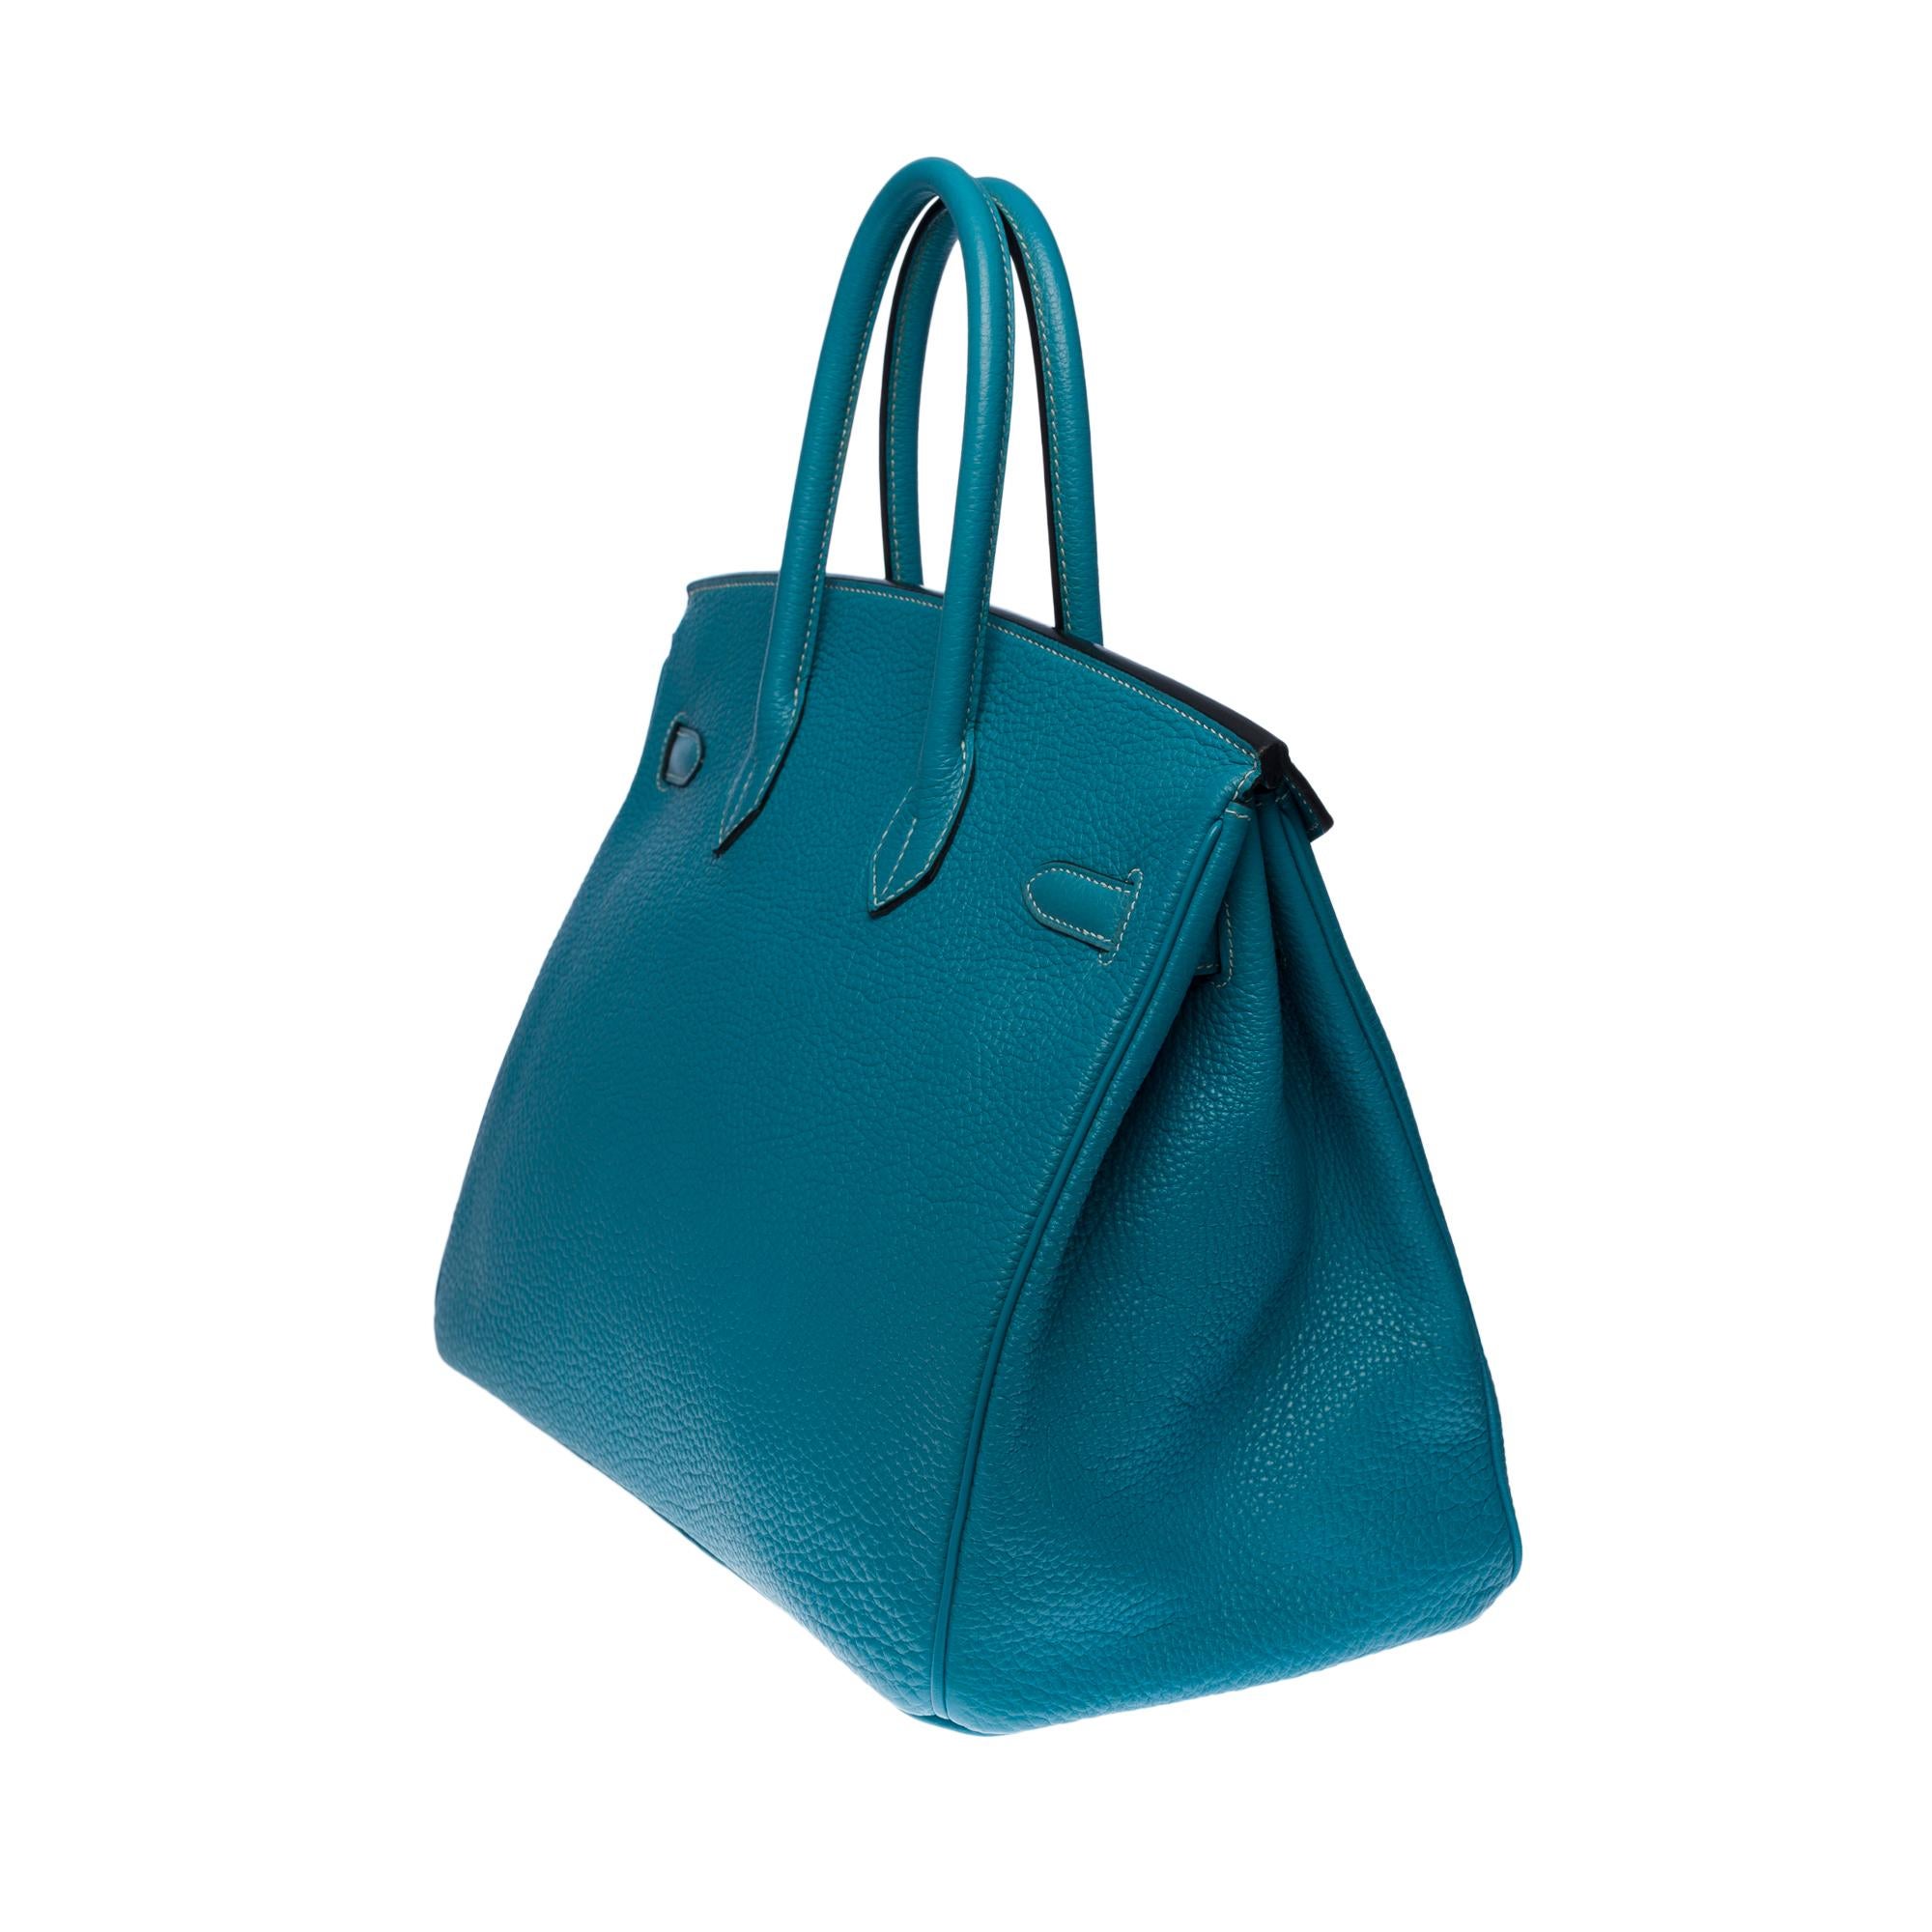 Magnificent Hermès Birkin 35 handbag in Bleu Saint-Cyr Togo leather, GHW In Good Condition In Paris, IDF